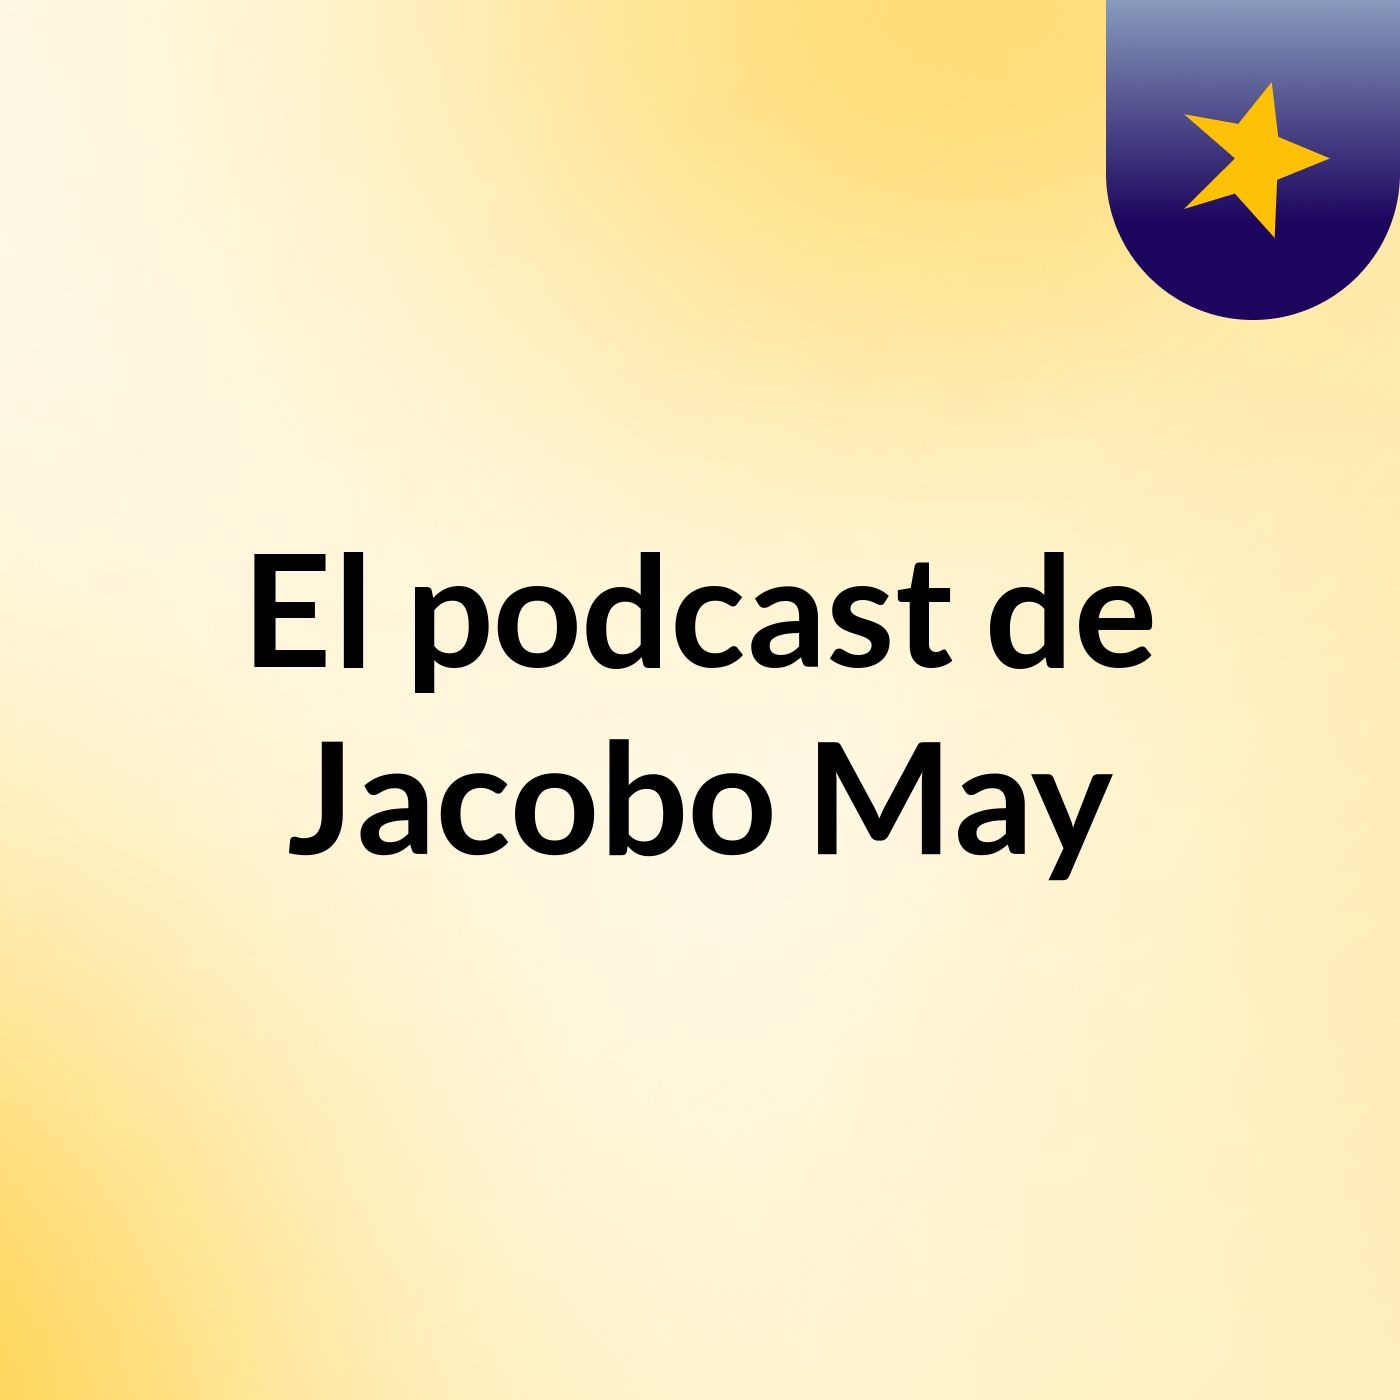 El podcast de Jacobo May